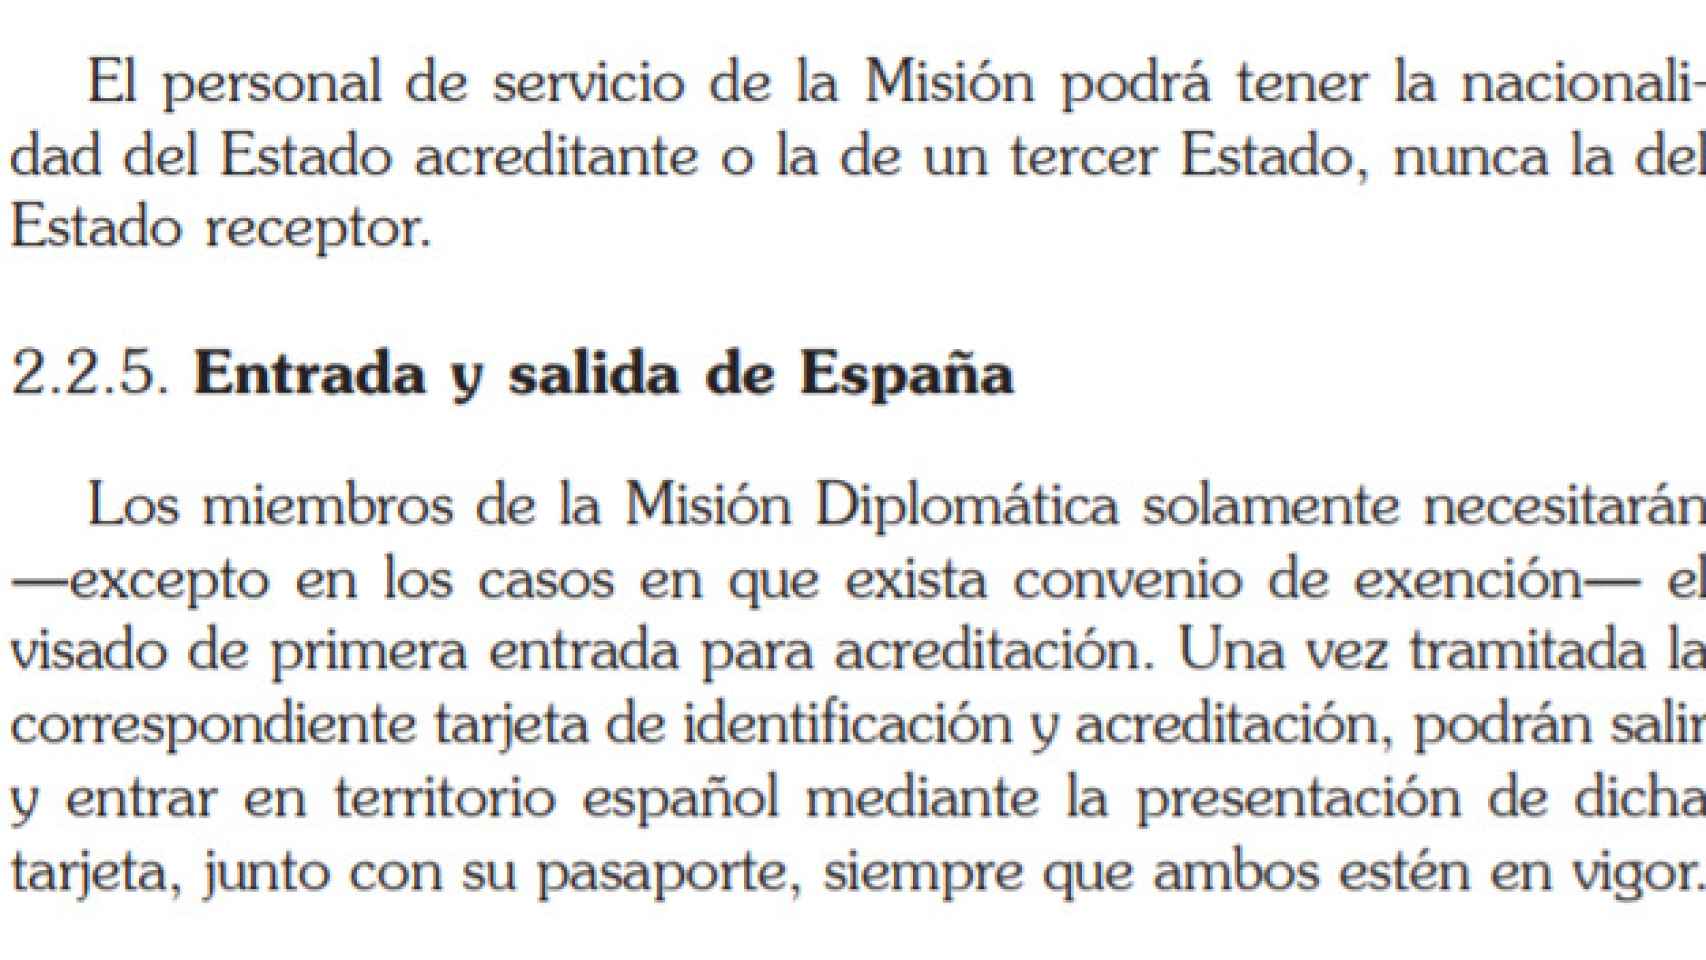 Fragmento de la Guía práctica para el personal diplomático acreditado en España publicada por Exteriores en 2017.